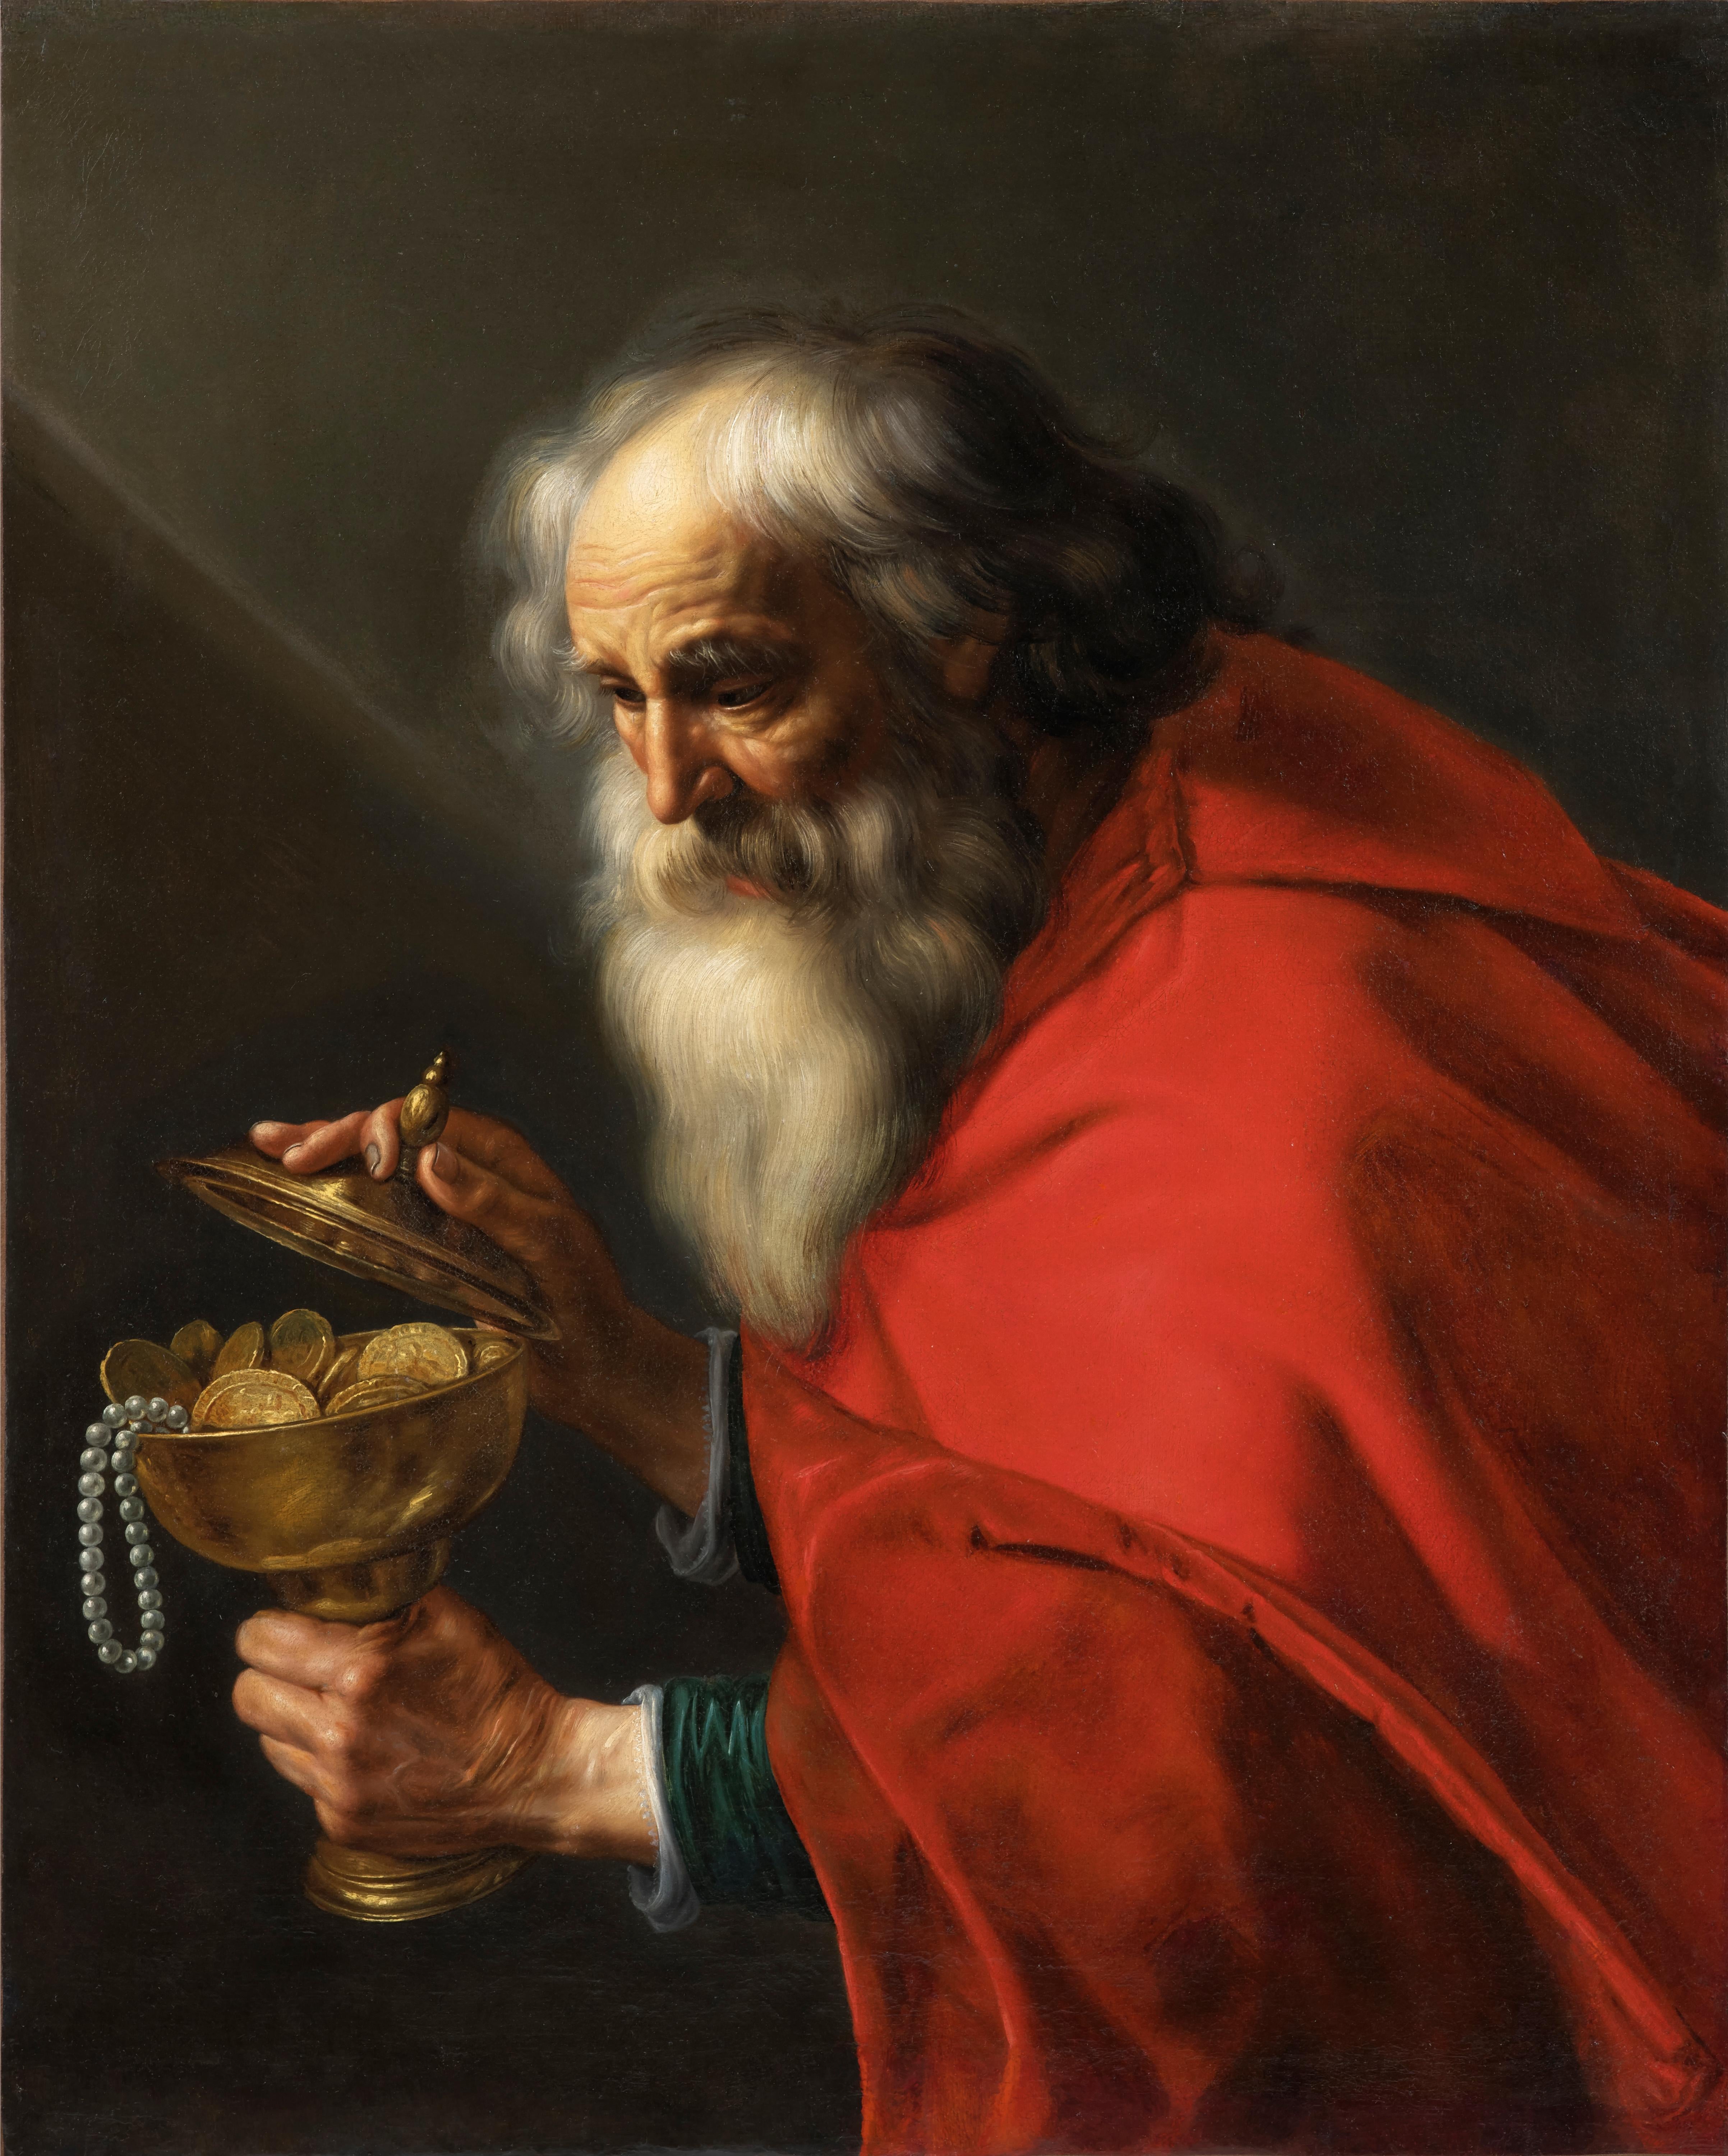 Dans ce tableau puissant:: Pieter van Mol présente la figure paradoxale d'un vieil homme portant un ciboire rempli de pièces d'or:: éclairé par un rayon de lumière. L'interprétation la plus plausible de cette peinture est qu'elle représente le plus